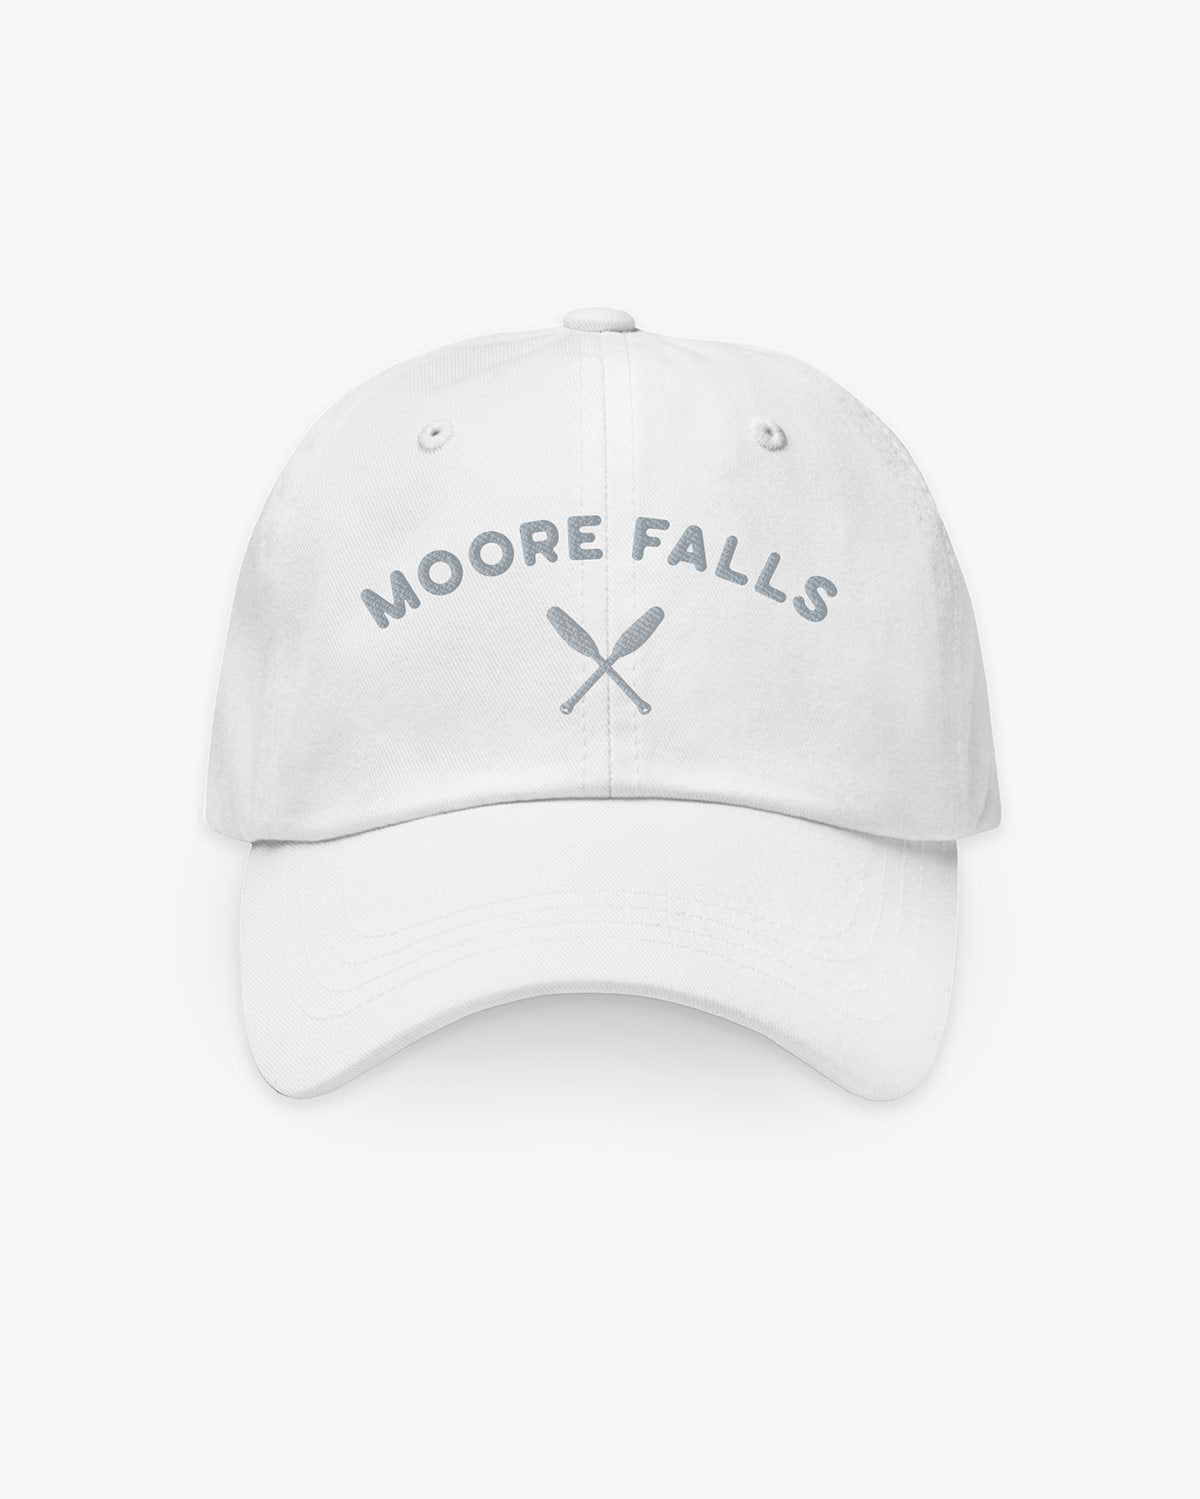 Oars - Moore Falls - Hat